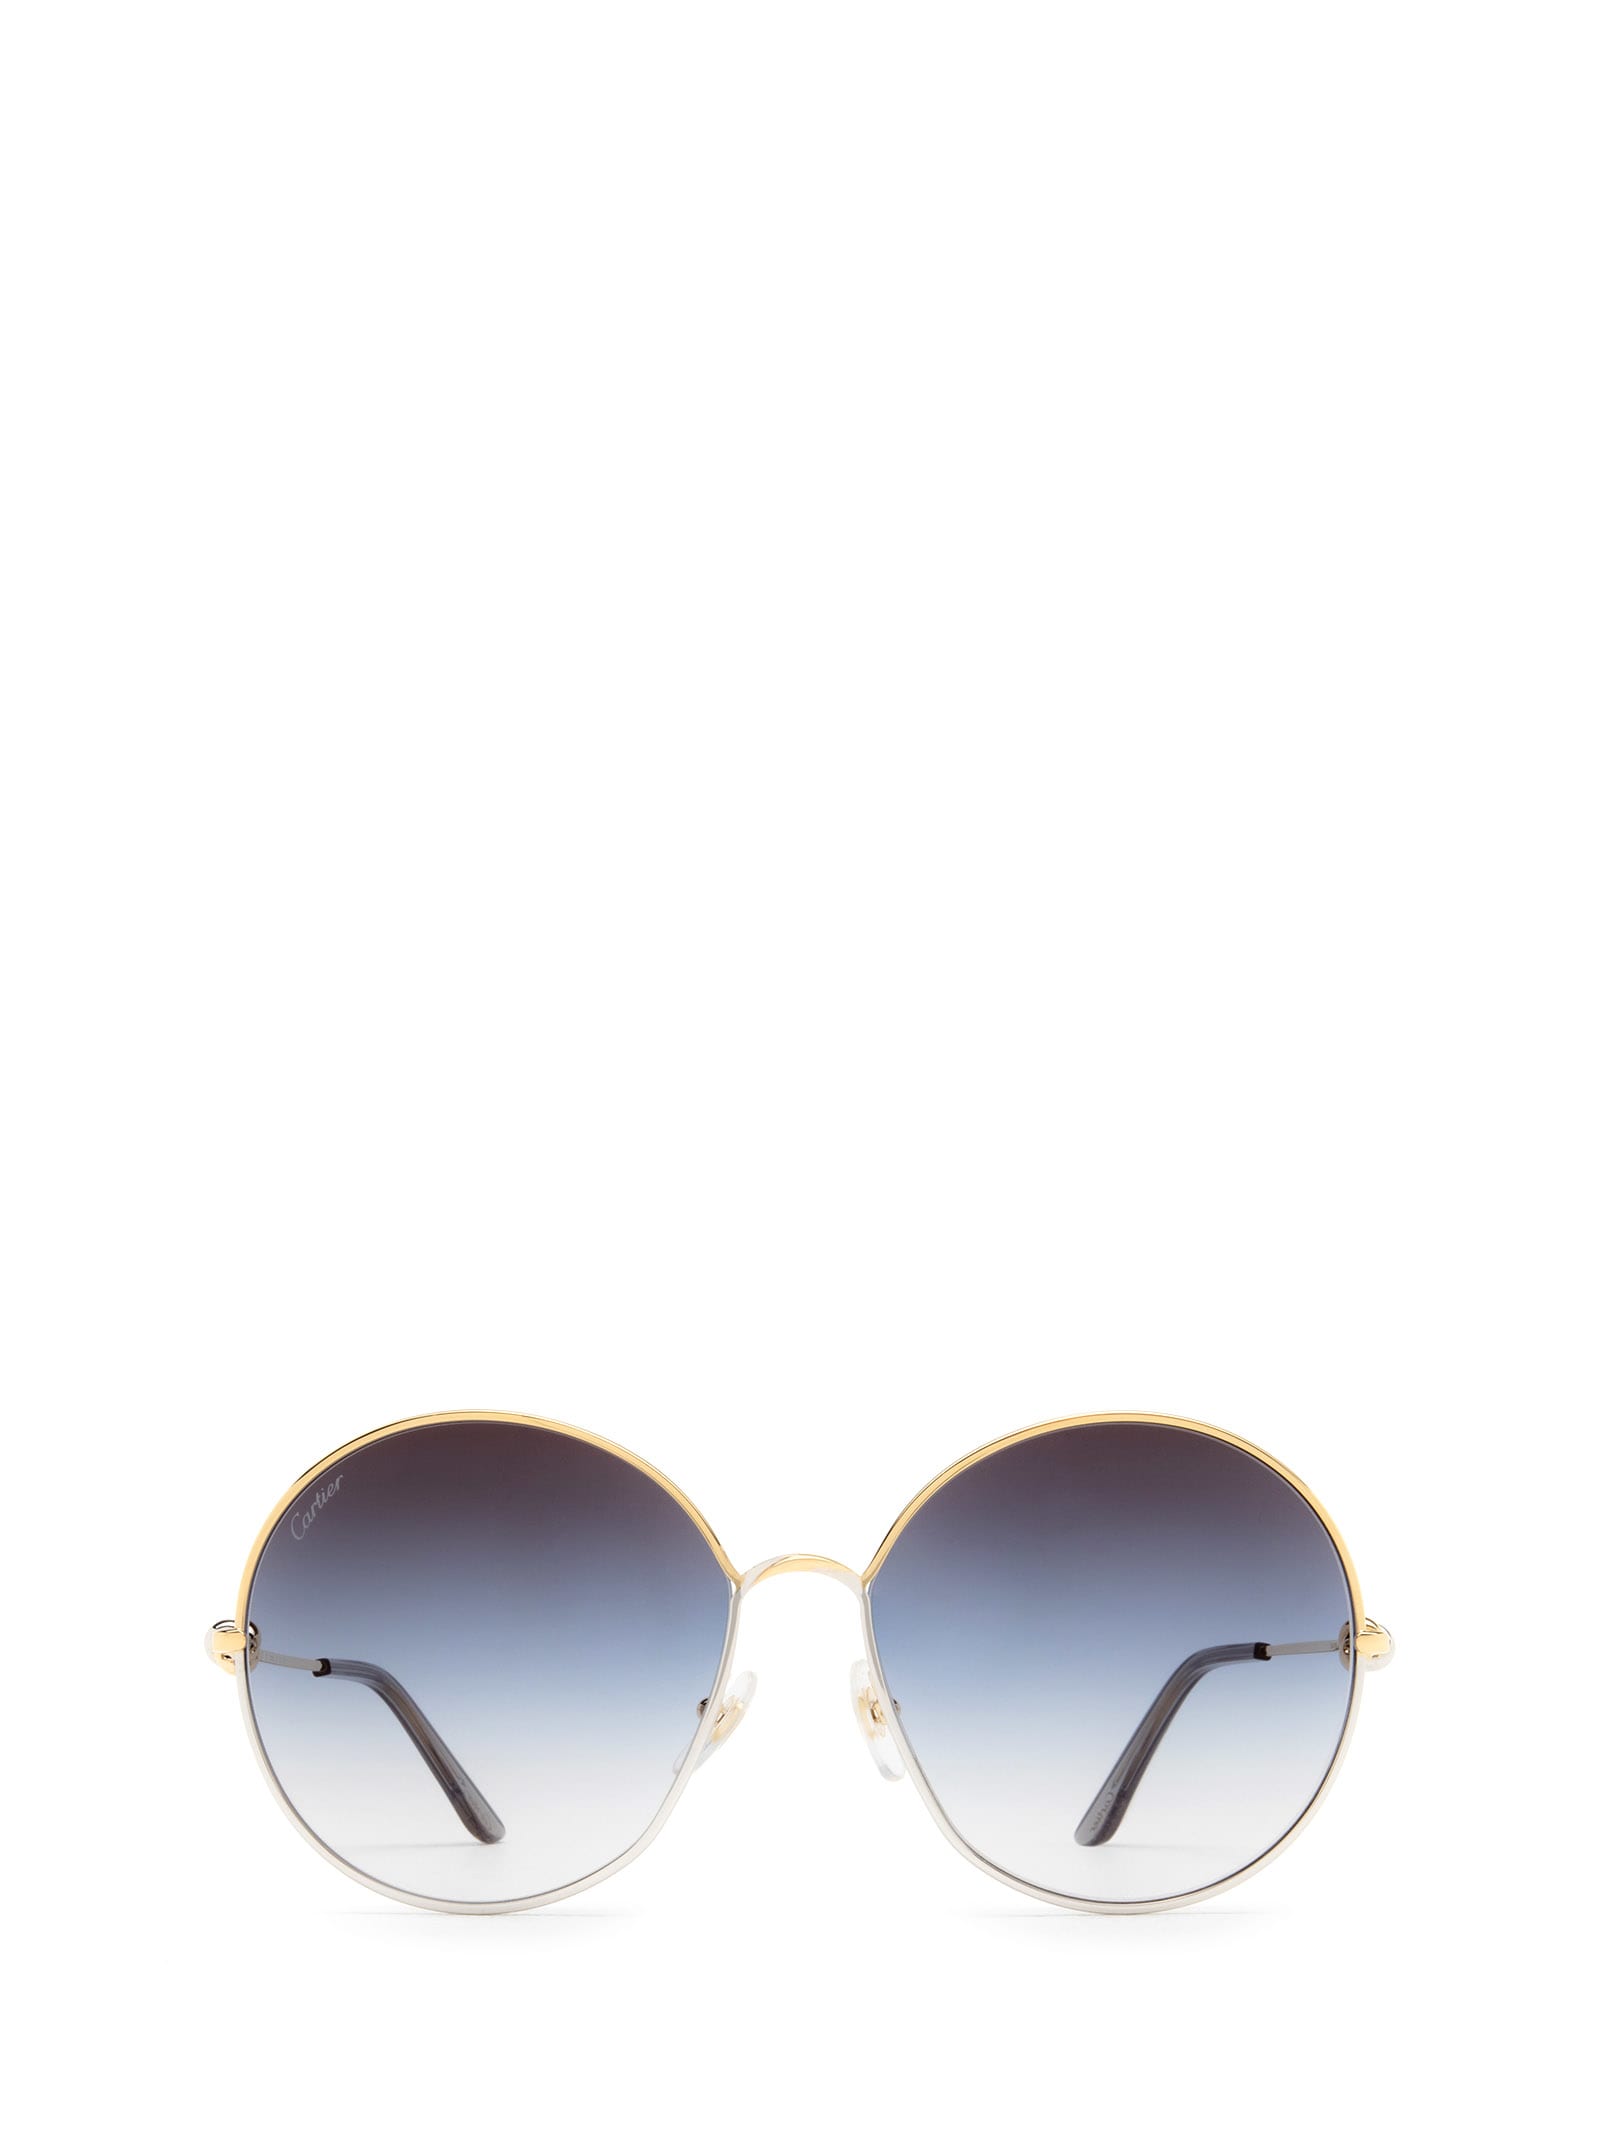 Round Classic Sunglasses